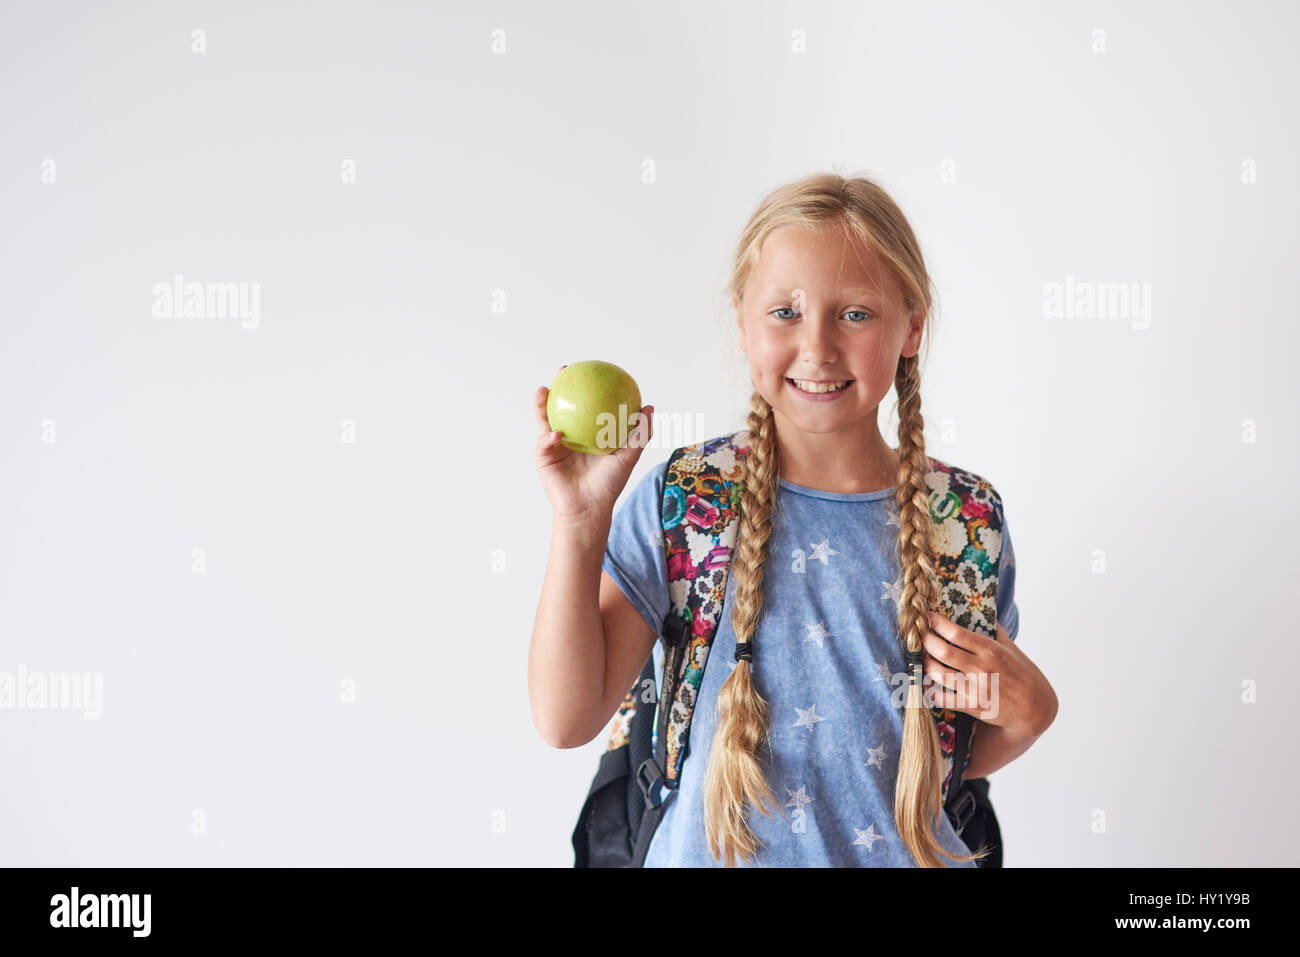 Cintura para arriba del estudiante Chica sujetando una manzana Foto de stock